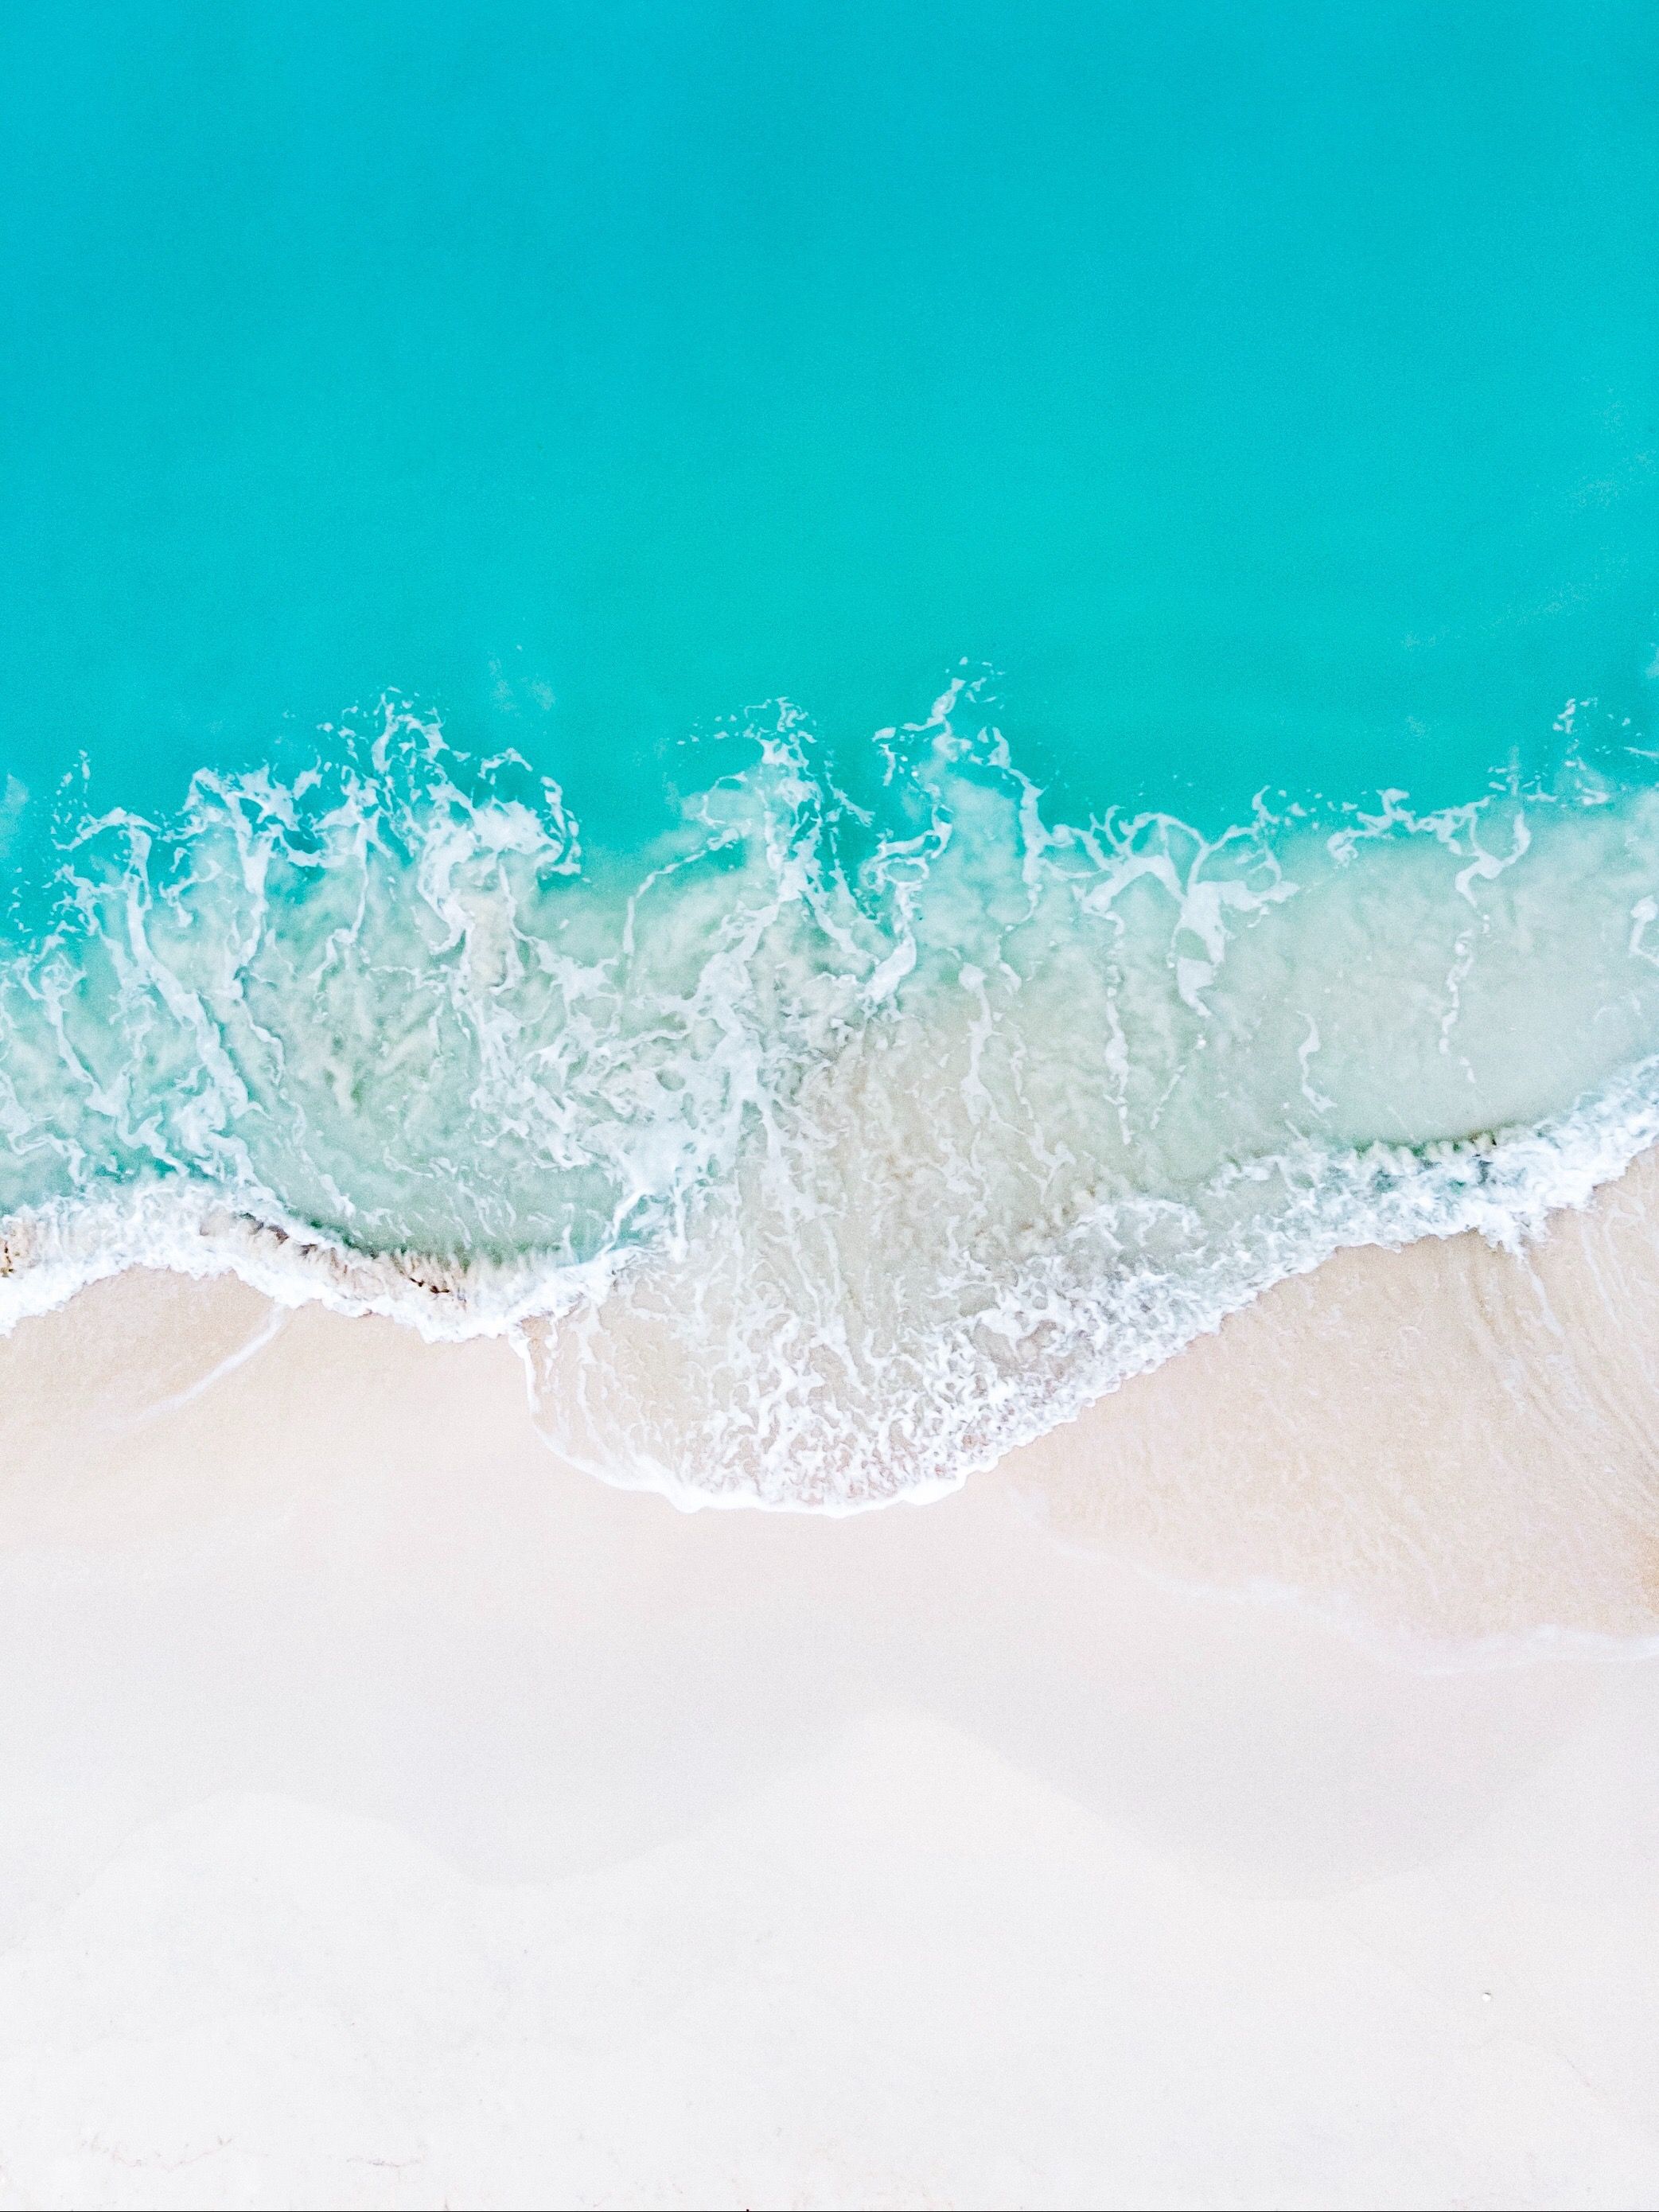 Hình nền sóng biển: Hình nền sóng biển sẽ mang đến cho bạn cuộc sống mới đầy sôi động và năng động. Với những đợt sóng vỗ trên biển, bạn sẽ cảm giác như đang trải qua những hành trình khám phá thế giới đầy thú vị và phiêu lưu. Hãy tận hưởng một cuộc sống nhiều màu sắc với hình ảnh nền sóng biển đầy mê hoặc này.